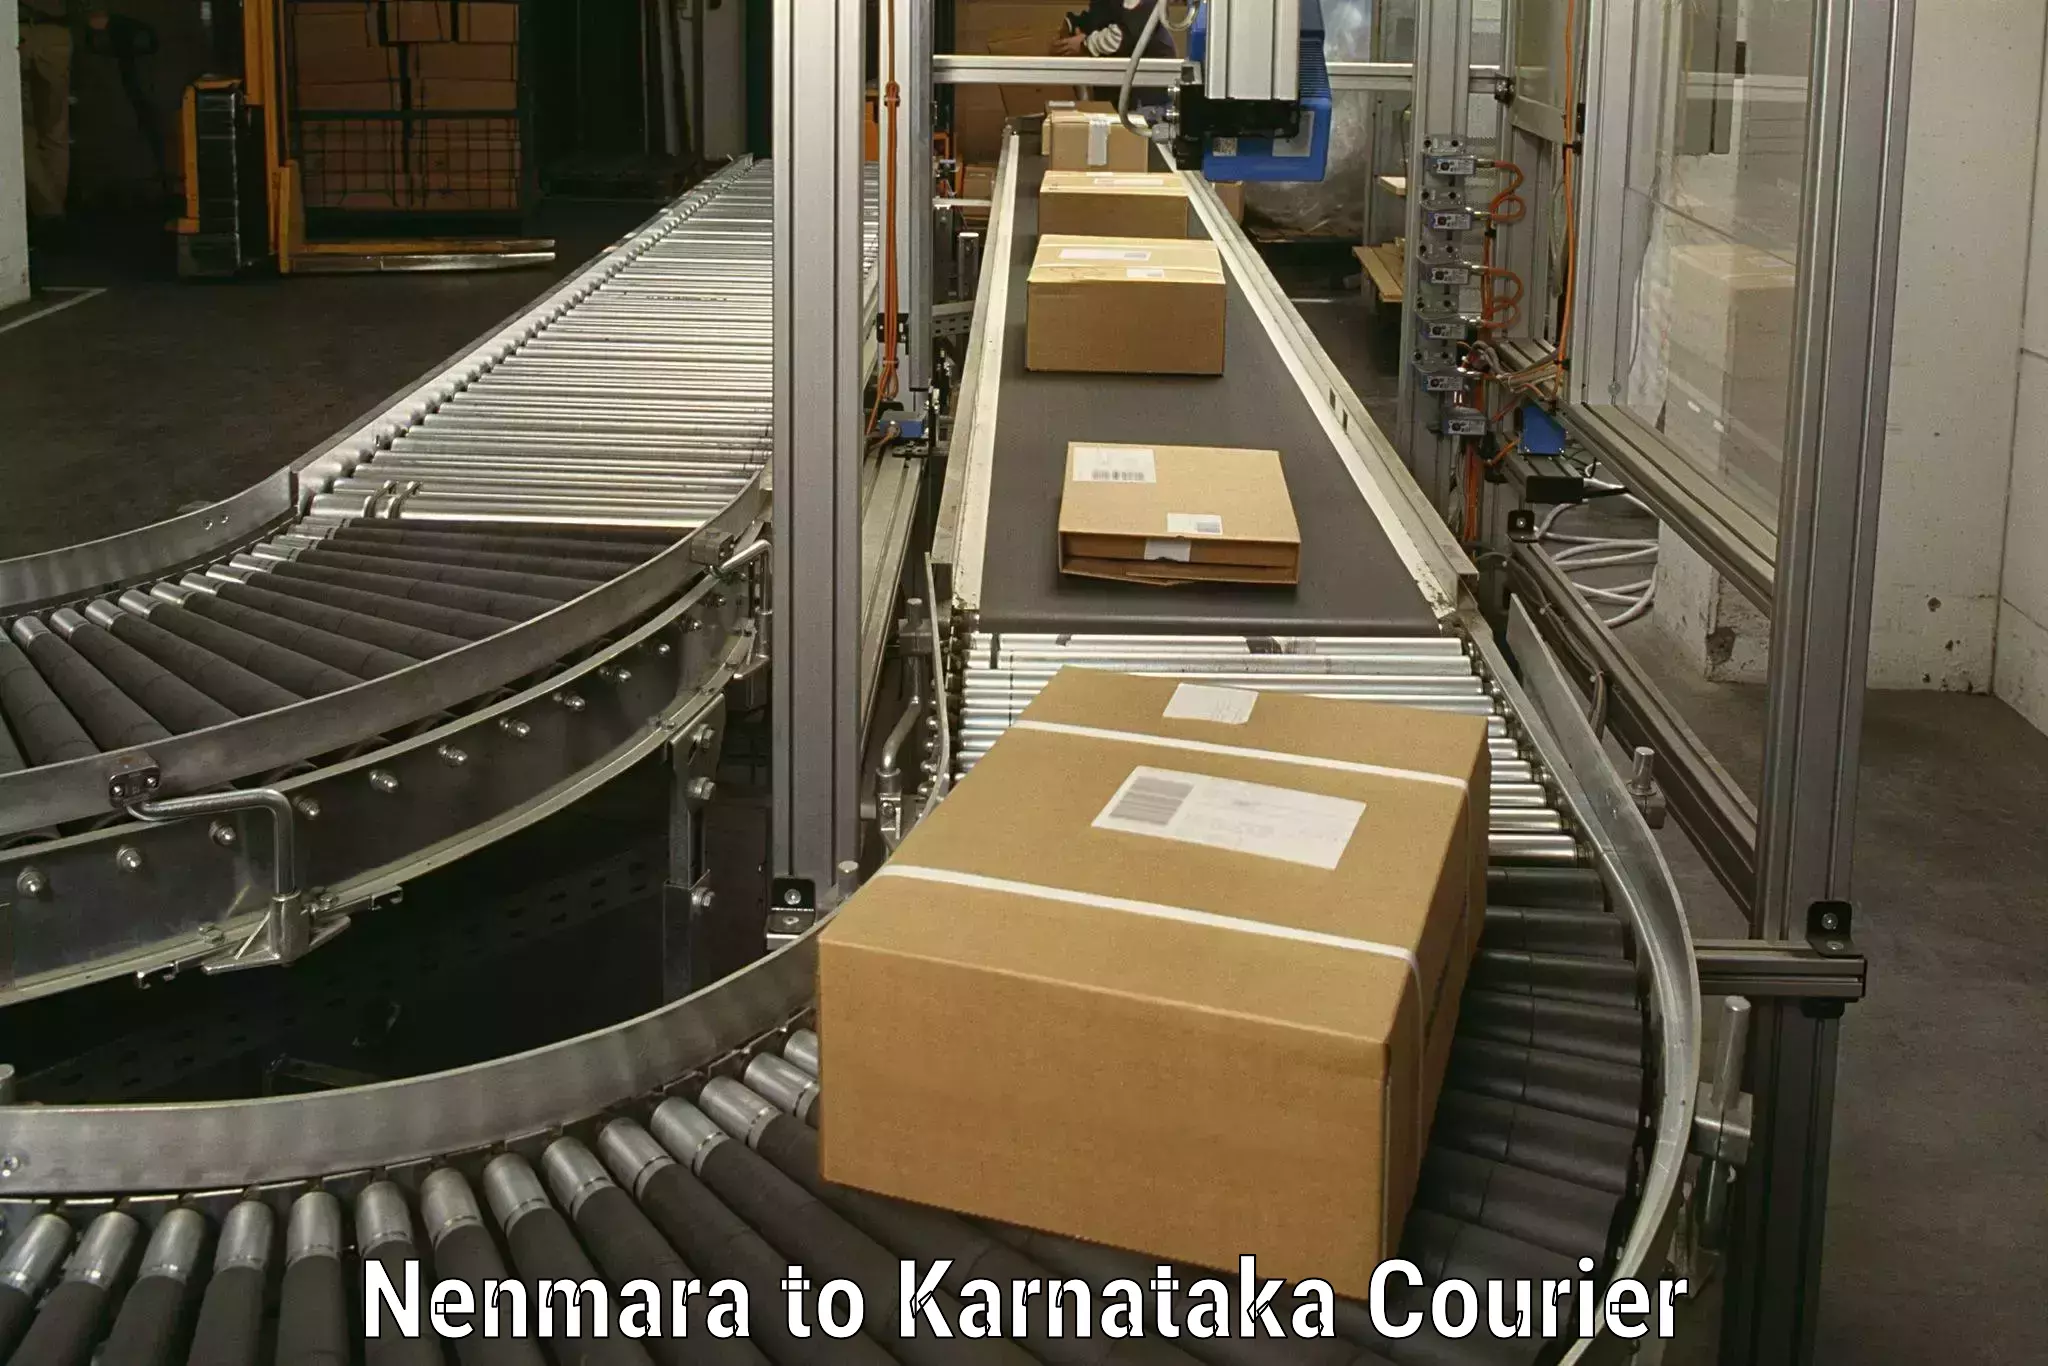 Professional packing and transport Nenmara to Karnataka